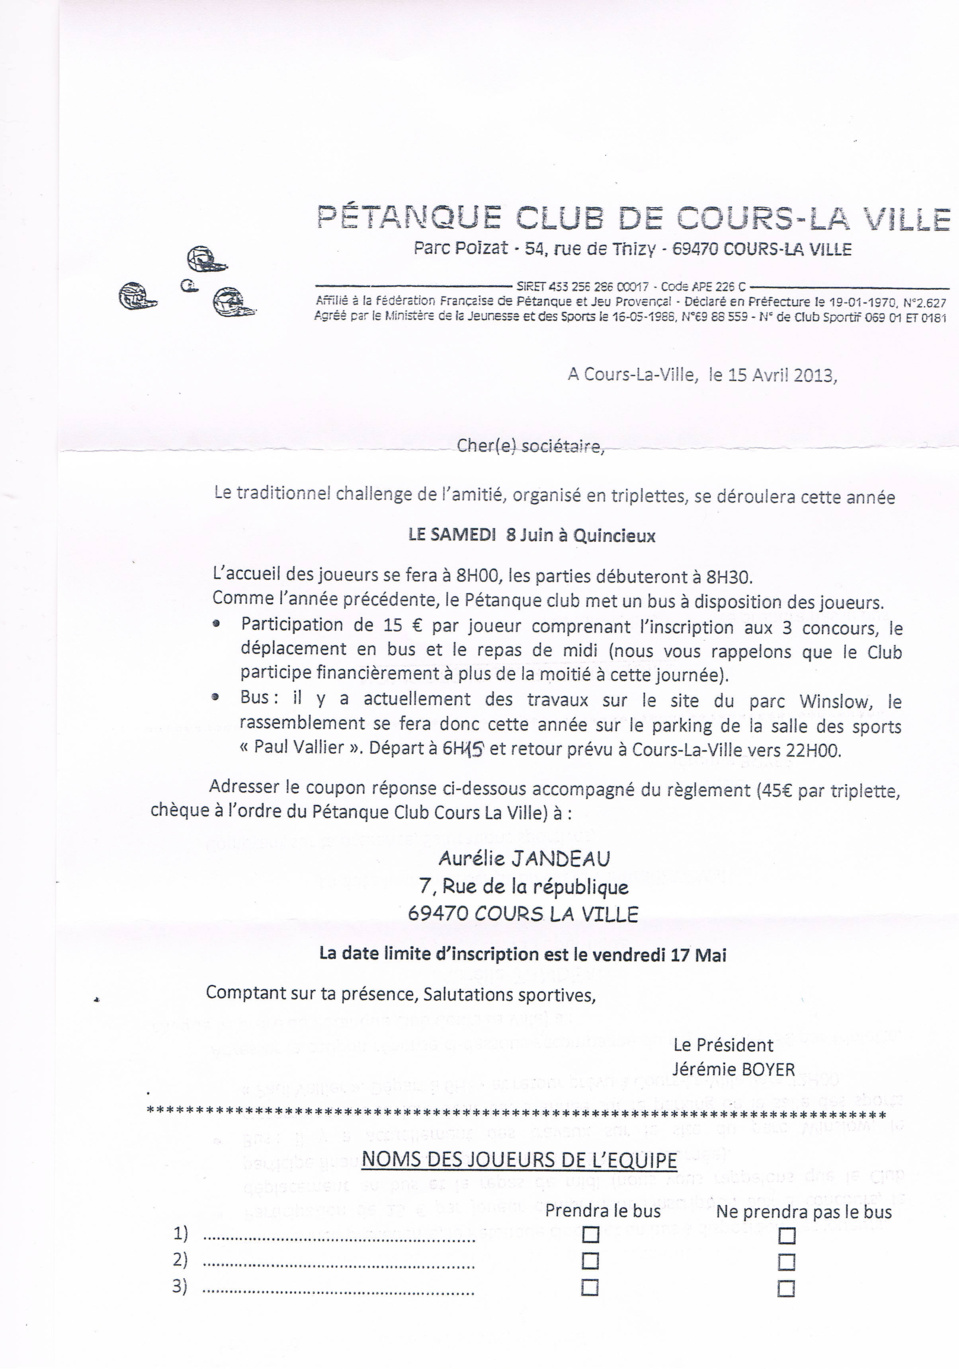 Feuille d'inscription pour le challenge de l’amitié le samedi 8 Juin 2013 à Quincieux